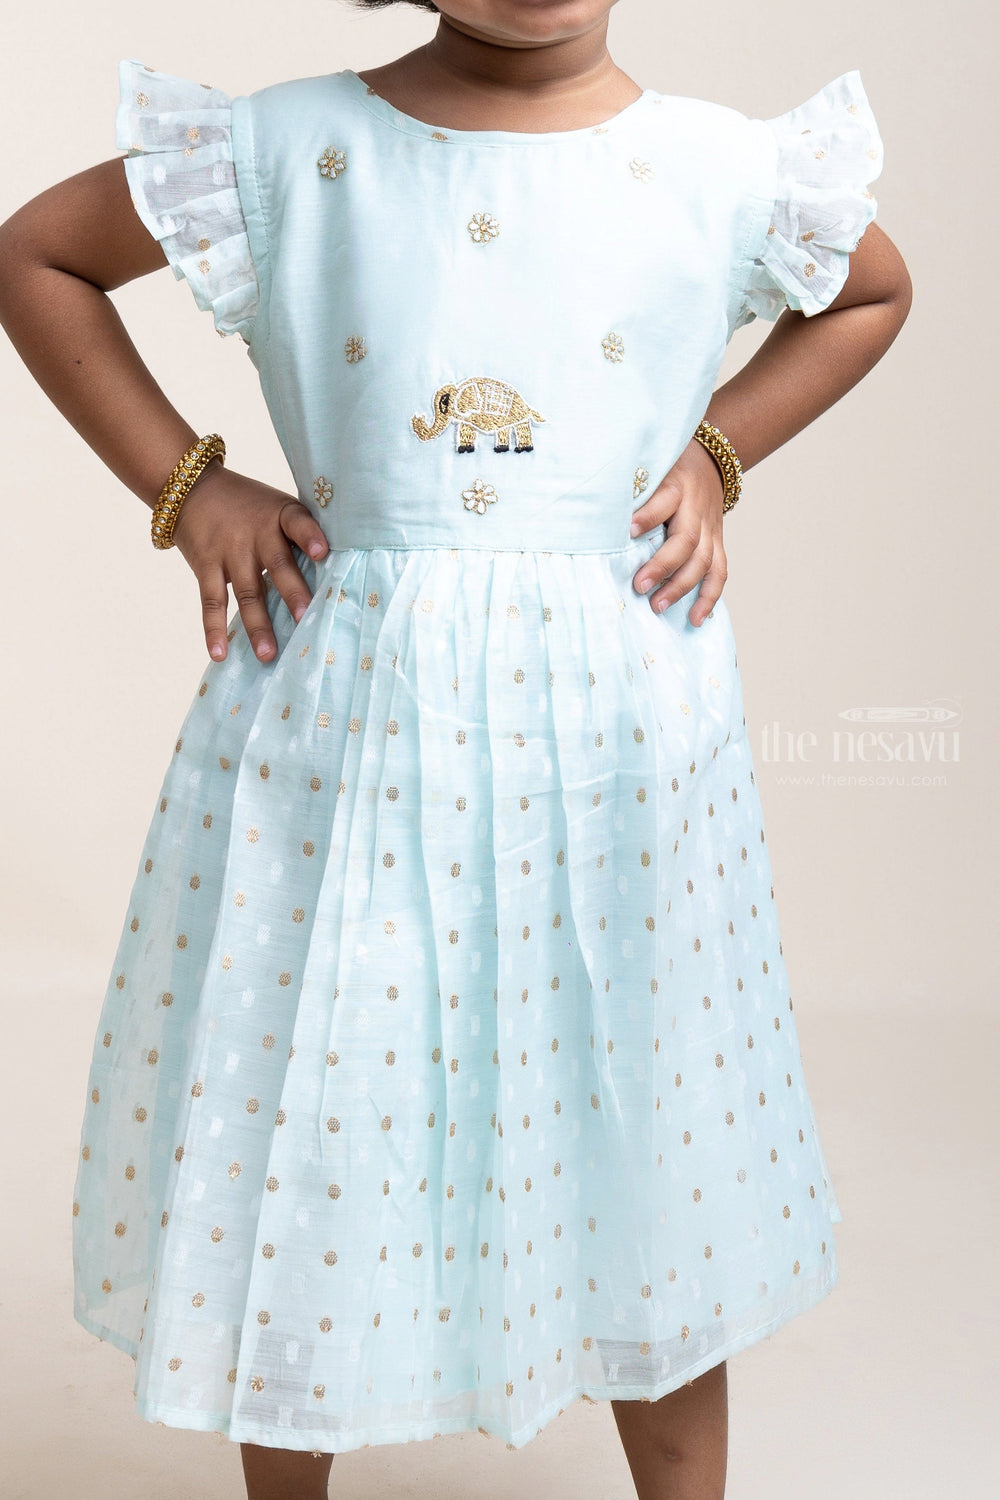 The Nesavu Girls Fancy Frock Thread Embroidered Butta Sequenced Blue Cotton Frock Nesavu Fashion Frock For Girls | Cotton Frocks Latest Model | The Nesavu